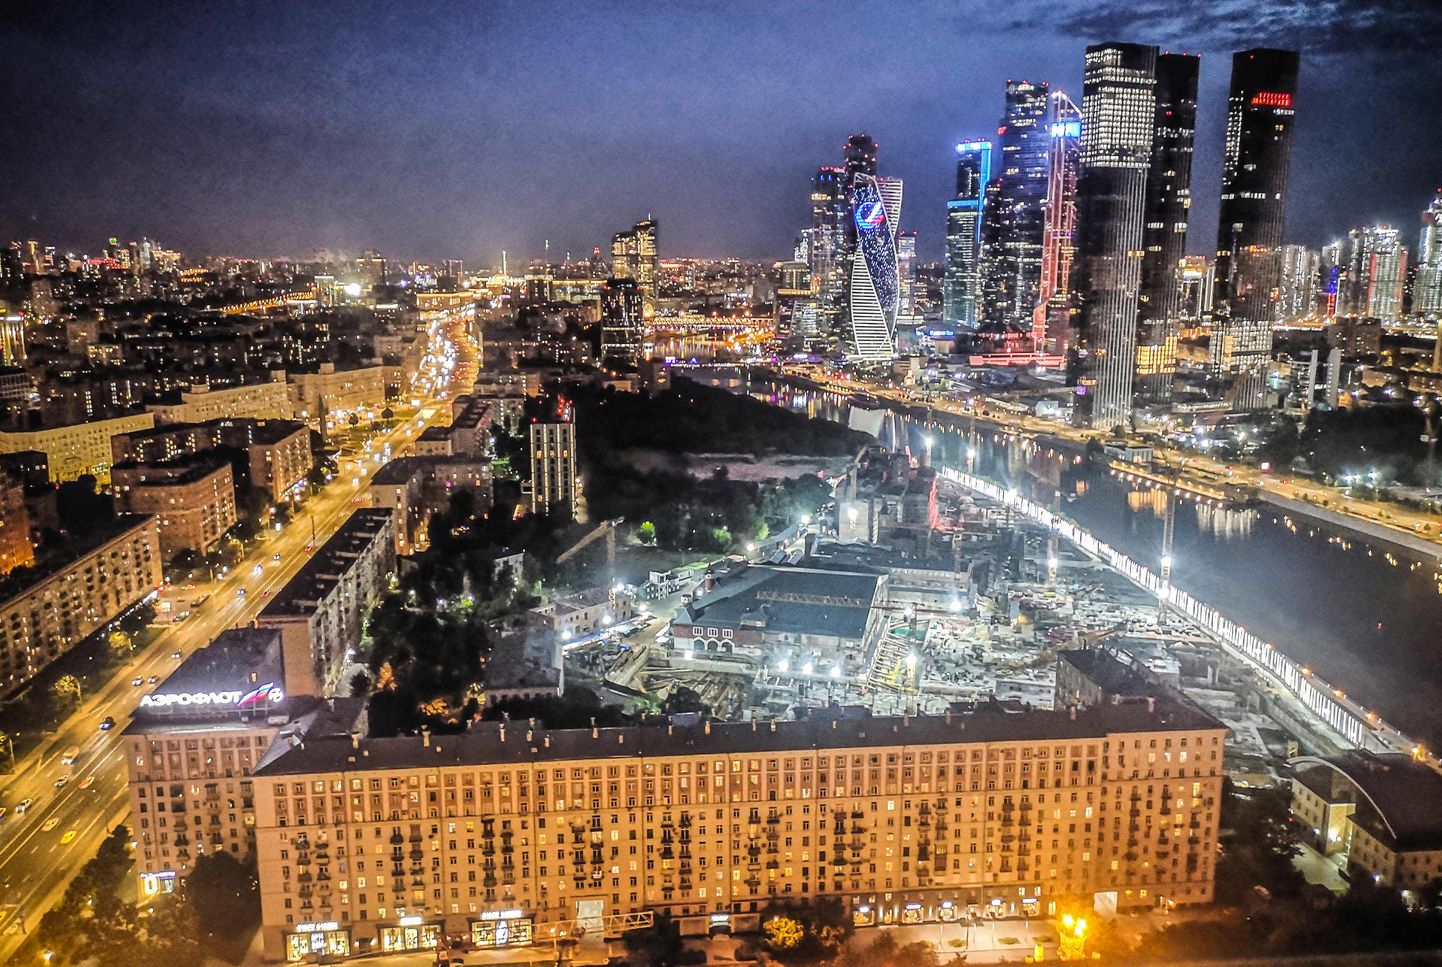 Москва.